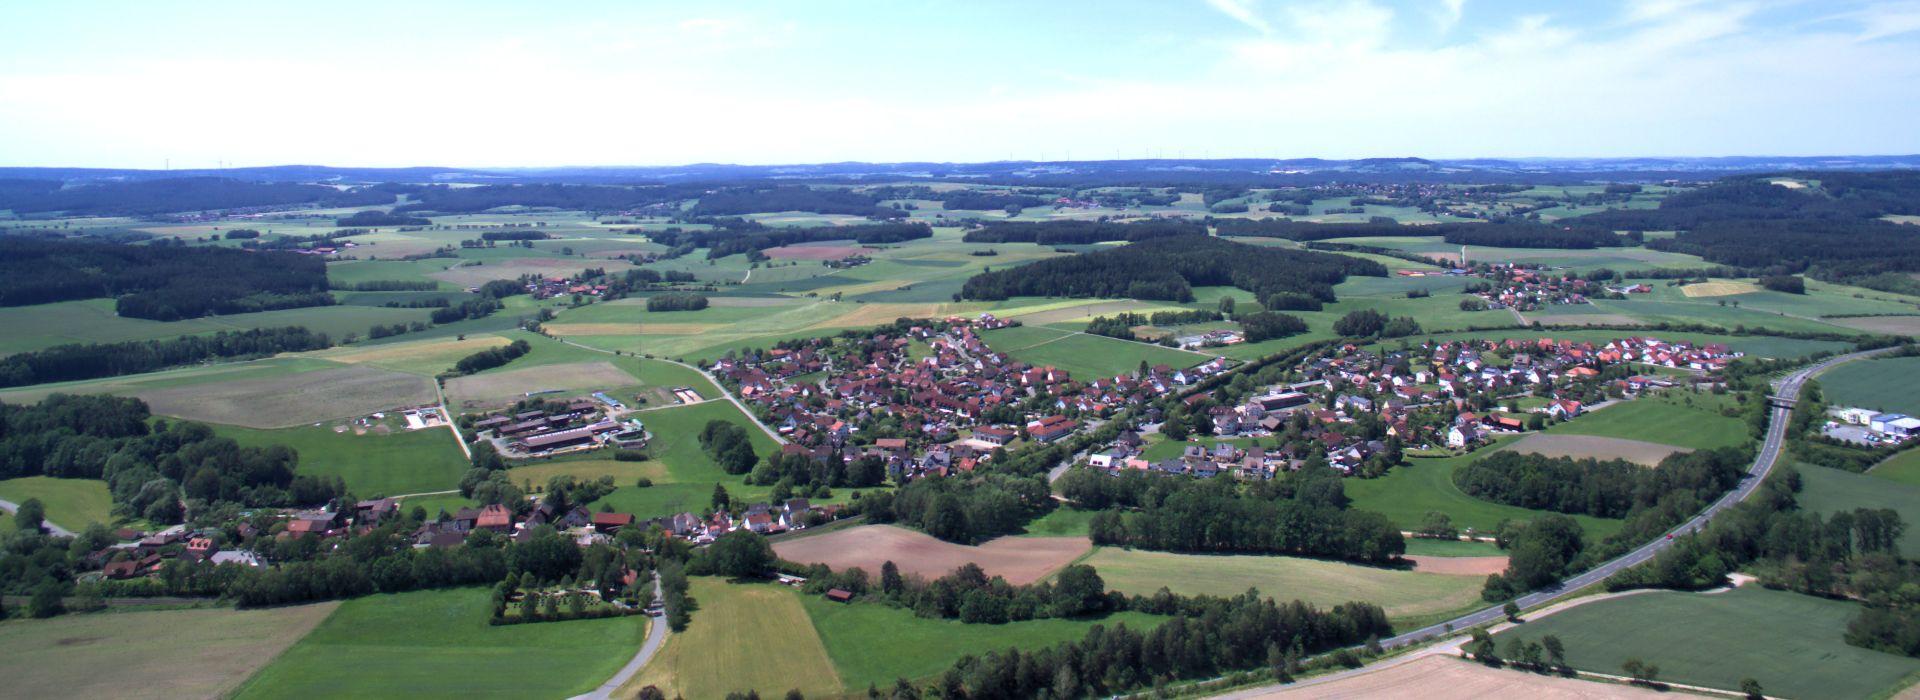 Luftbild von Seybothenreuth